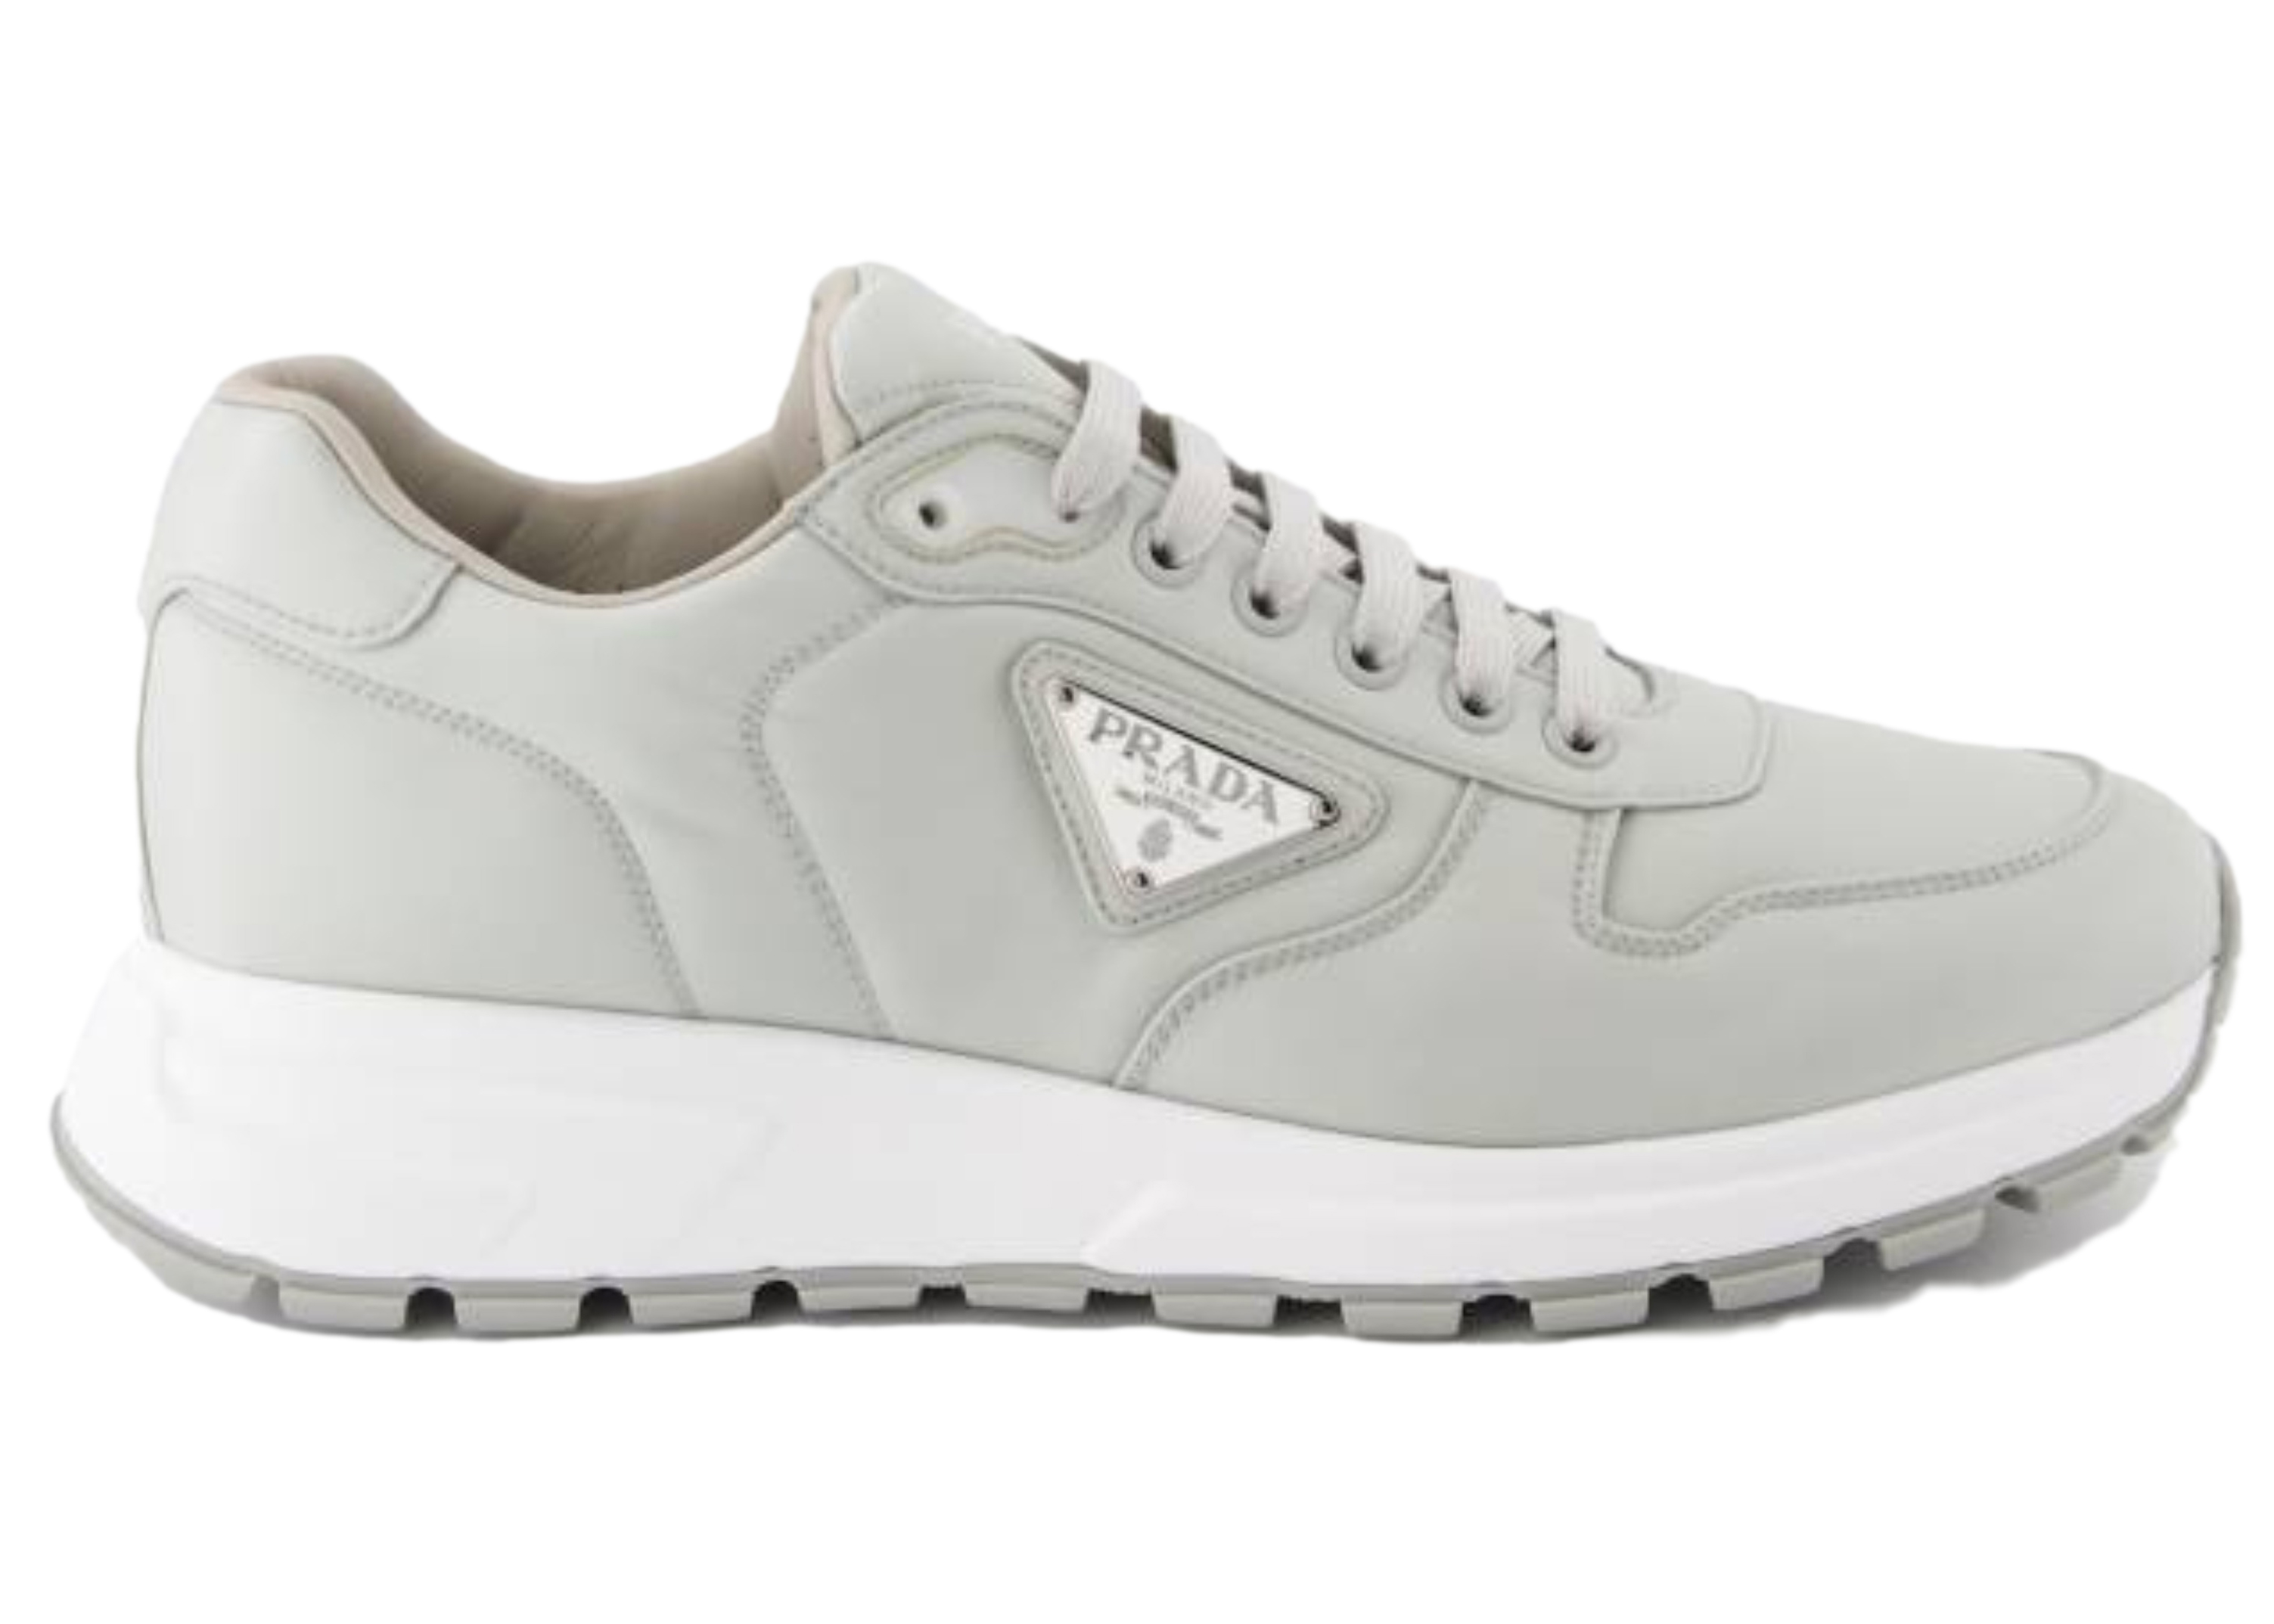 Prada Re-Nylon Sneaker Grey White